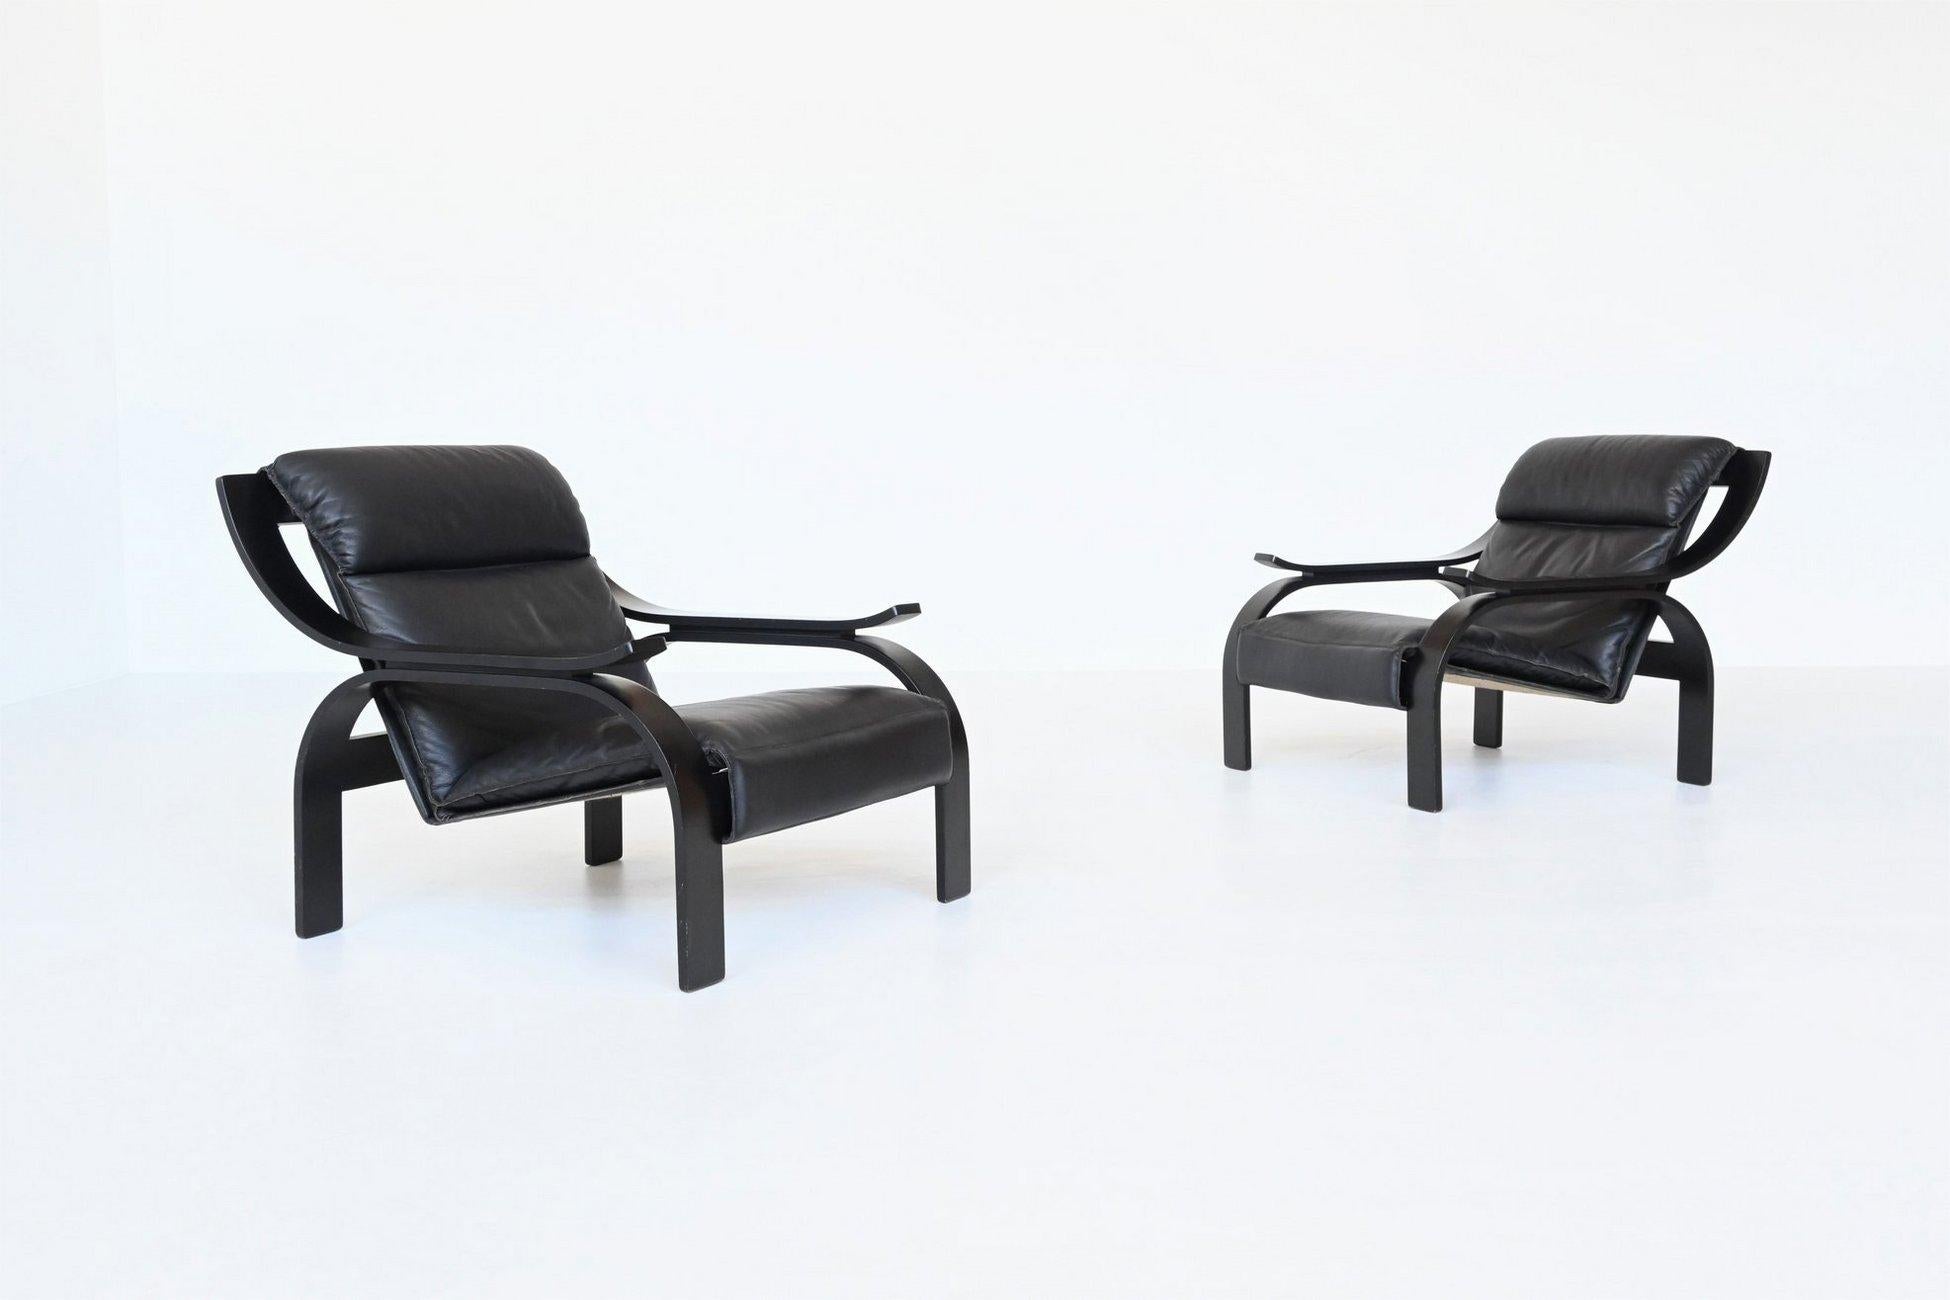 Paire iconique de chaises longues Woodline conçues par Marco Zanuso pour Arflex, Italie 1964. Ces chaises aux formes fantastiques sont dotées d'un cadre en contreplaqué laqué noir et d'une assise recouverte de cuir noir de haute qualité. Le siège